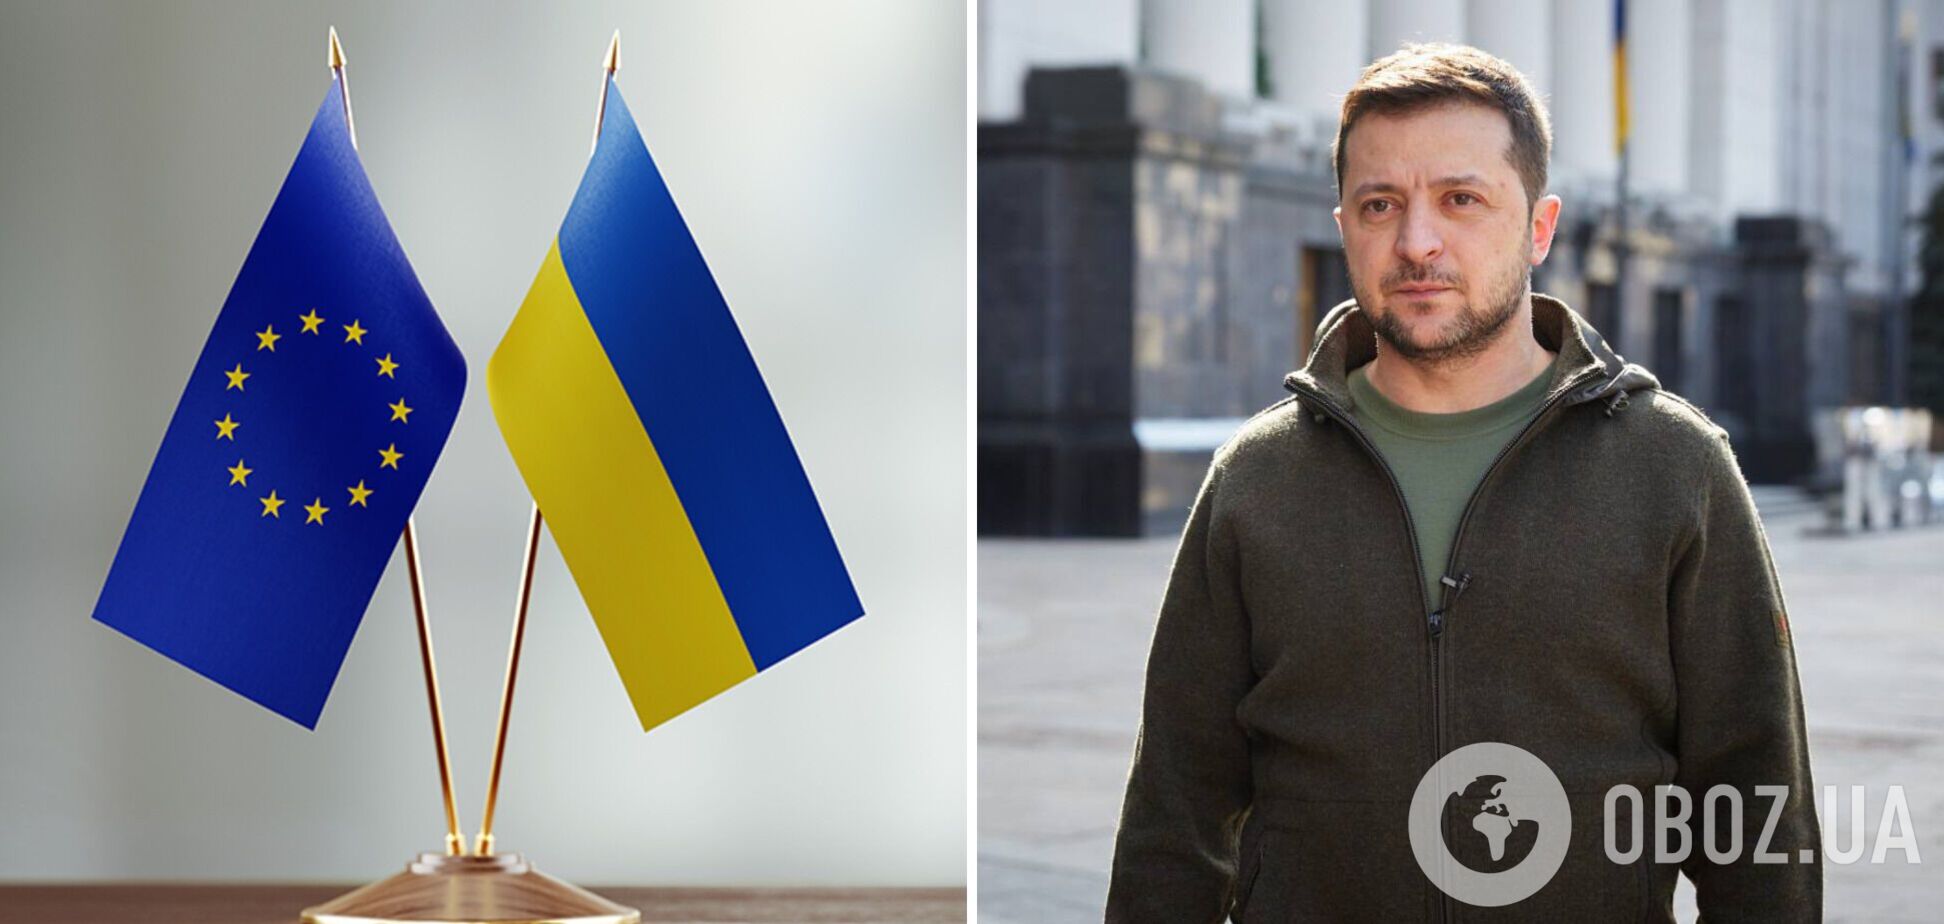 'Надо максимально активно готовить Украину для членства в ЕС': Зеленский рассказал о сотрудничестве с Западом в 2023 году